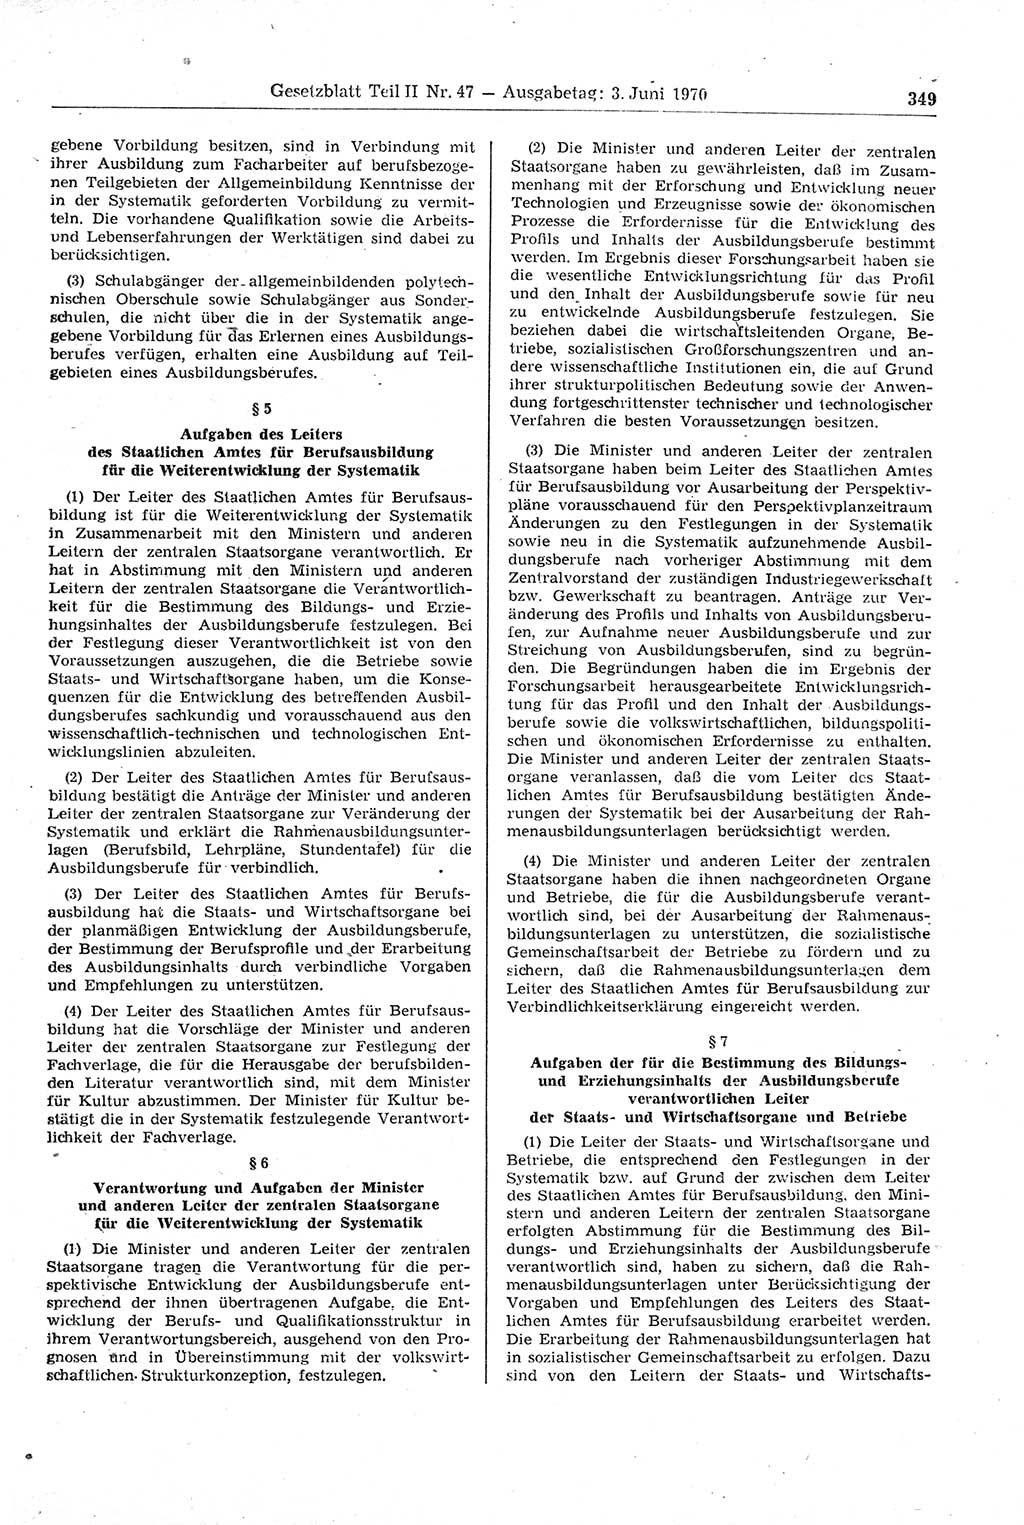 Gesetzblatt (GBl.) der Deutschen Demokratischen Republik (DDR) Teil ⅠⅠ 1970, Seite 349 (GBl. DDR ⅠⅠ 1970, S. 349)